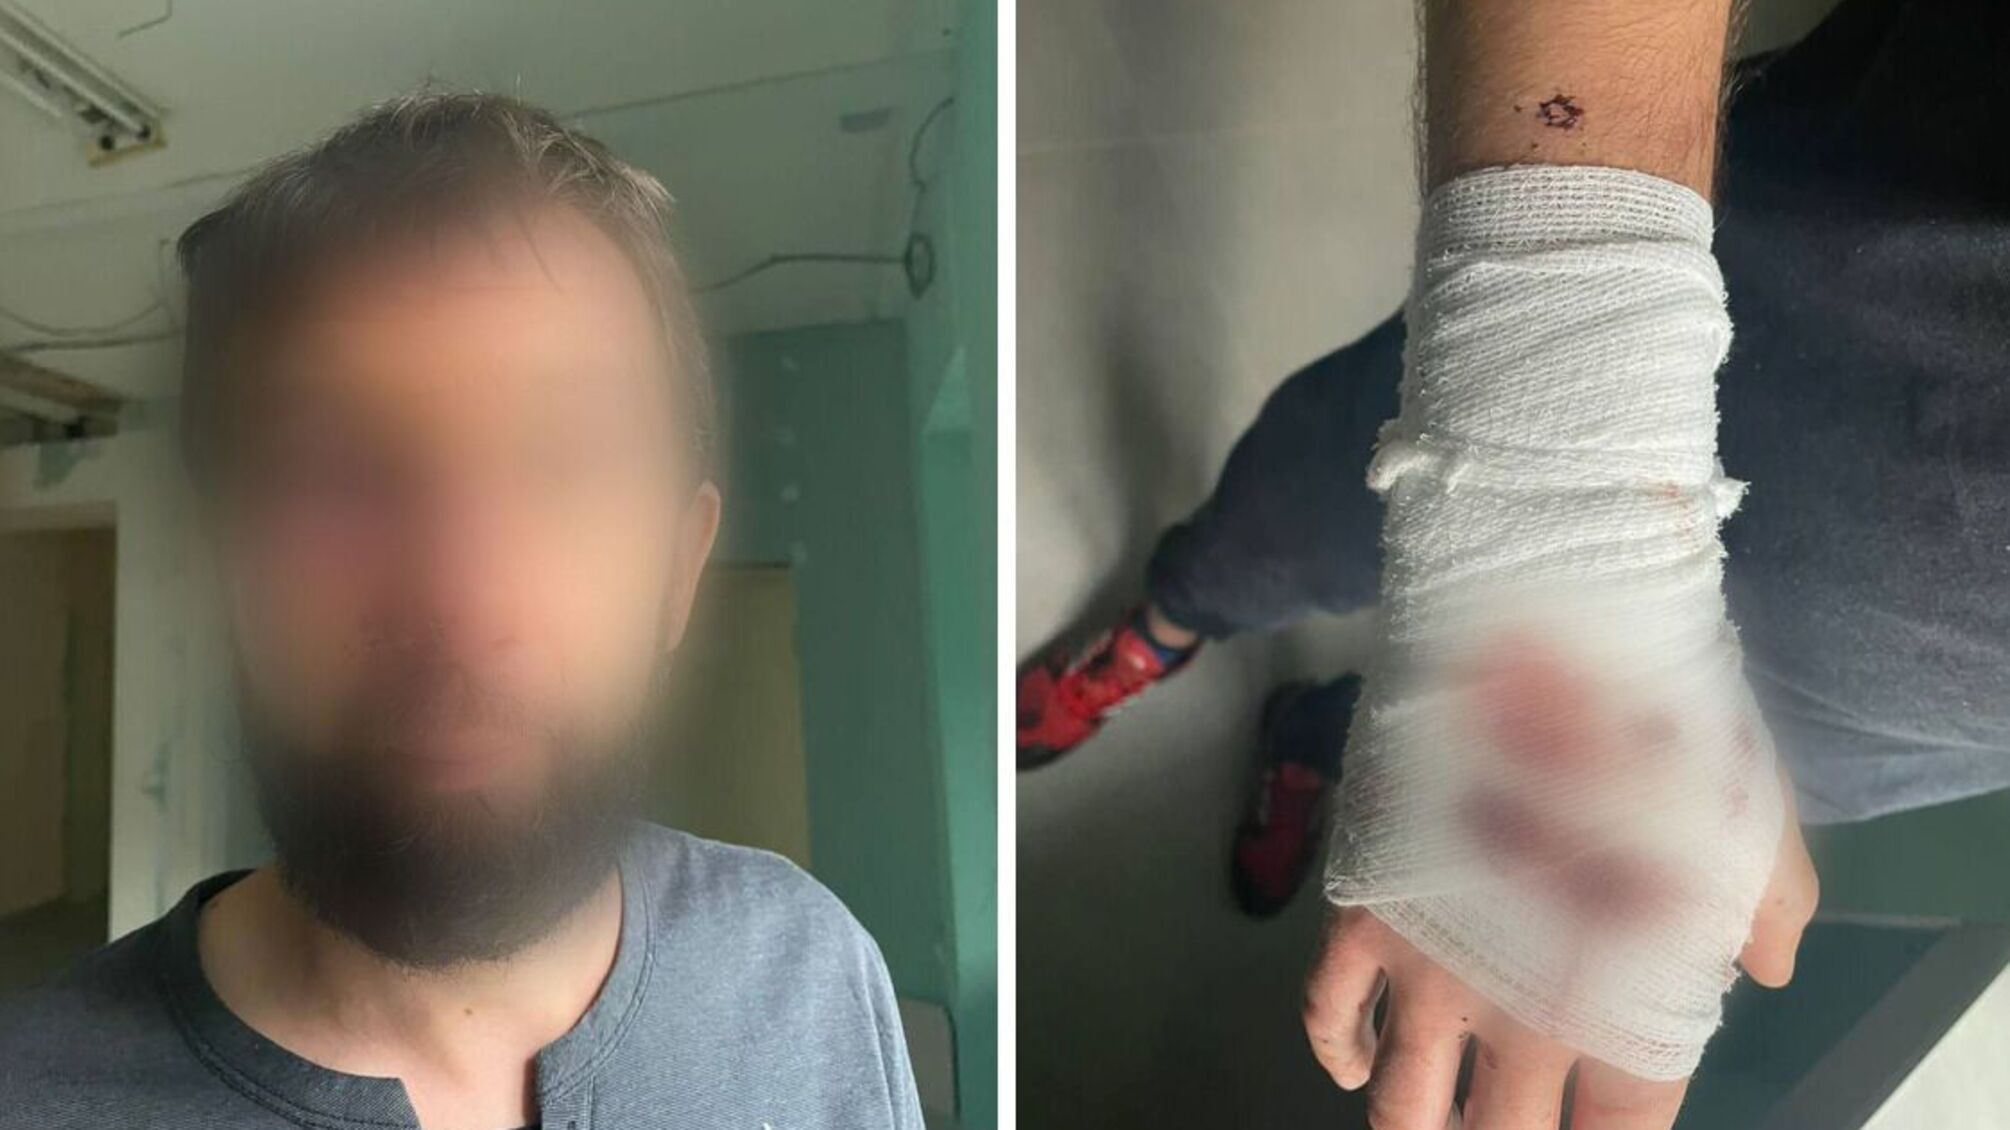 Сім куль у спину і переломи: у Києві невідомі зі зброєю напали на чоловіка  – деталі справи